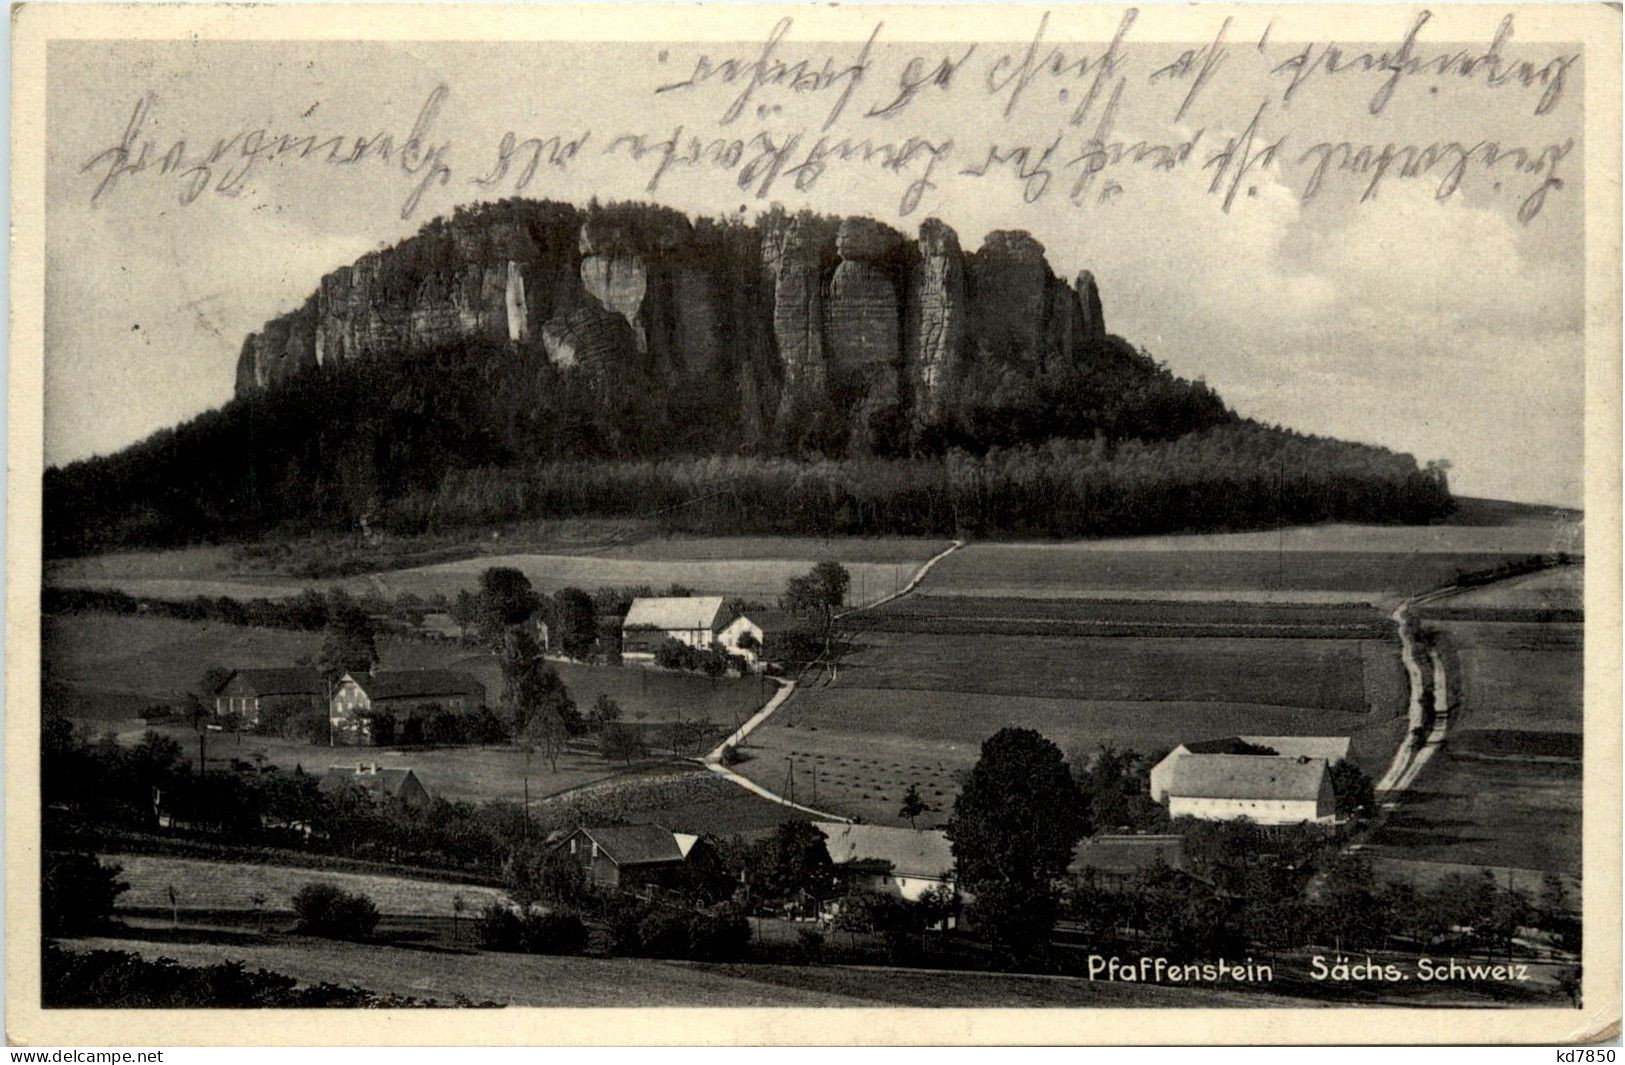 Pfaffenstein - Königstein (Sächs. Schw.)